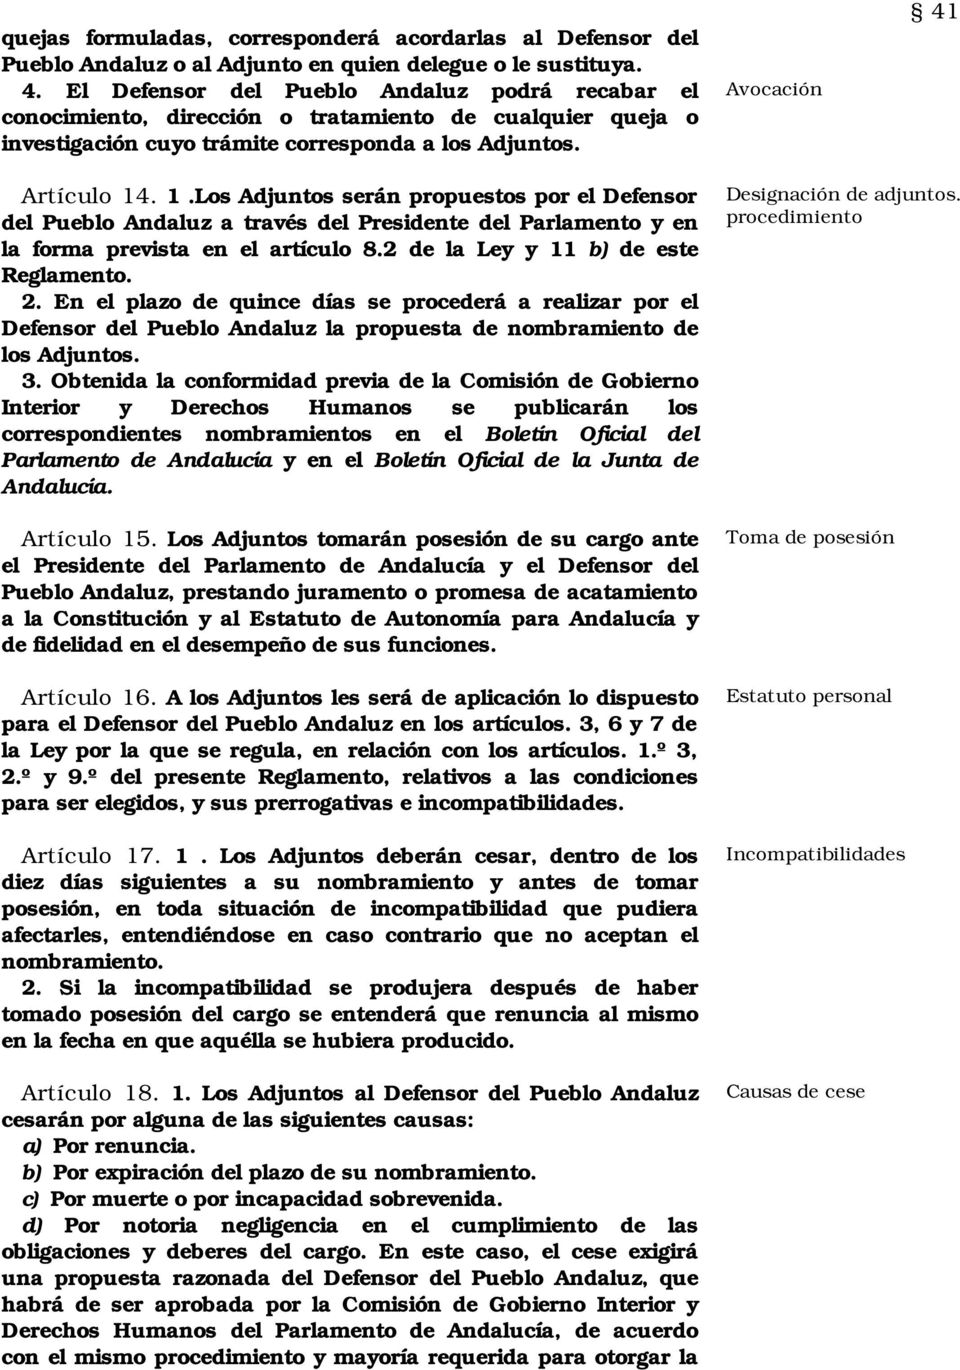 . 1.Los Adjuntos serán propuestos por el Defensor del Pueblo Andaluz a través del Presidente del Parlamento y en la forma prevista en el artículo 8.2 de la Ley y 11 b) de este Reglamento. 2.